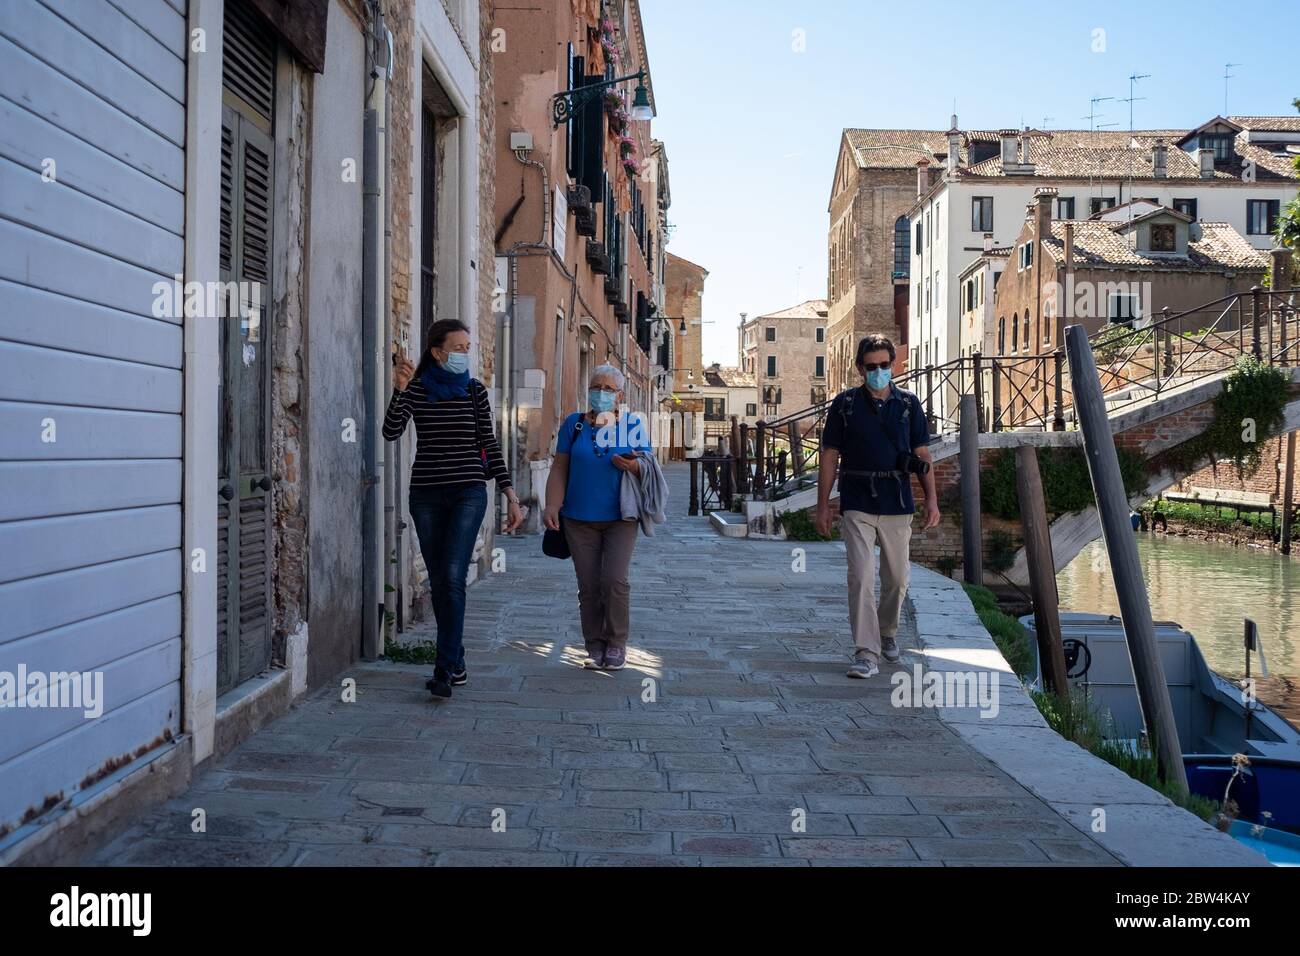 VENISE, ITALIE - MAI 2020: Un guide touristique avec des touristes juste après la réouverture de la ville après le verrouillage du coronavirus le mai 2020 à Banque D'Images